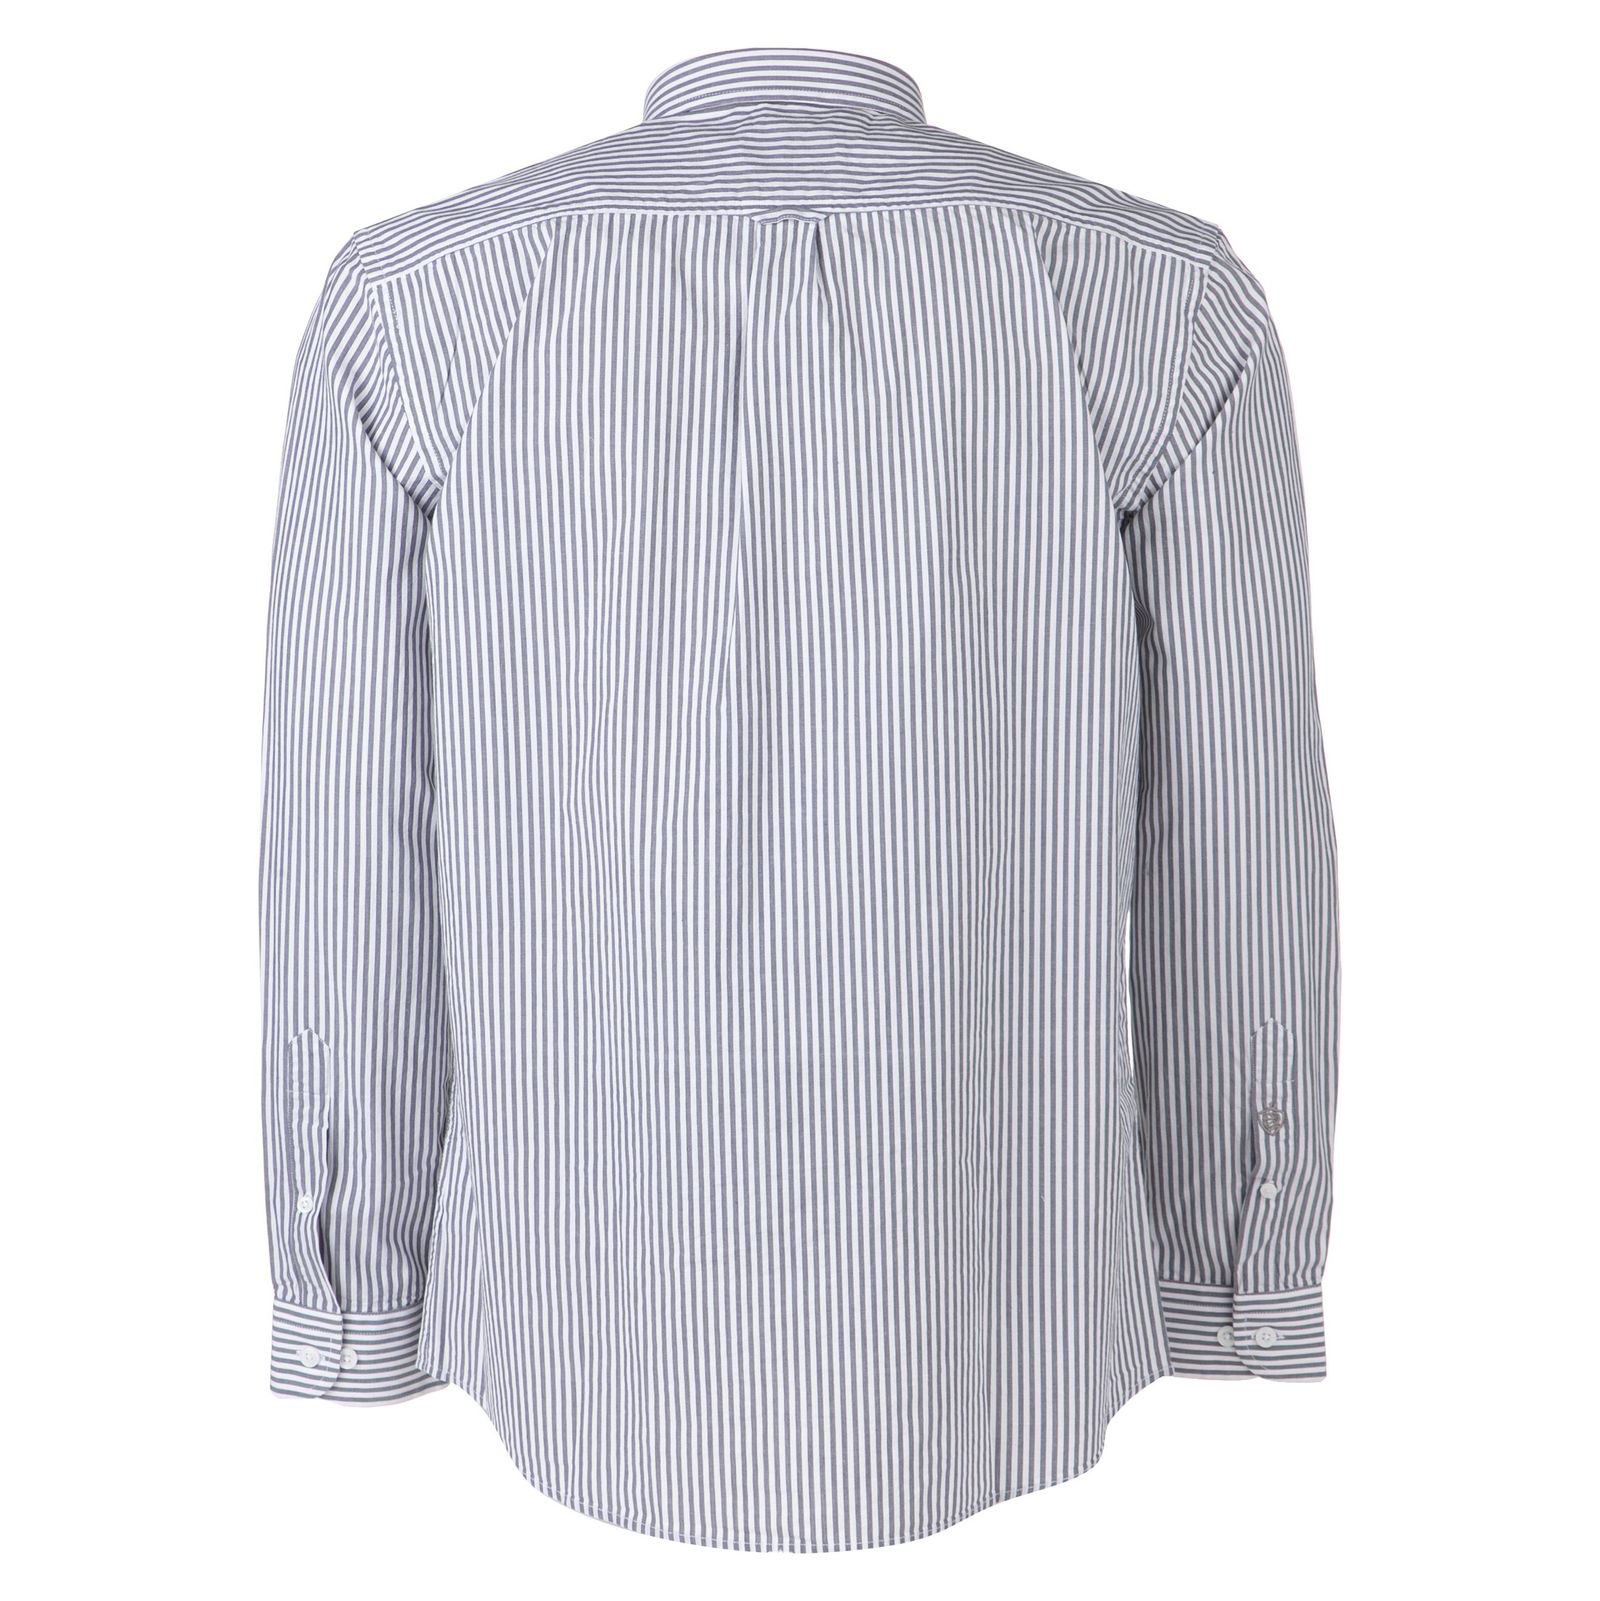 پیراهن مردانه لرد آرچر مدل 20011429301 - طوسی سفید - 5